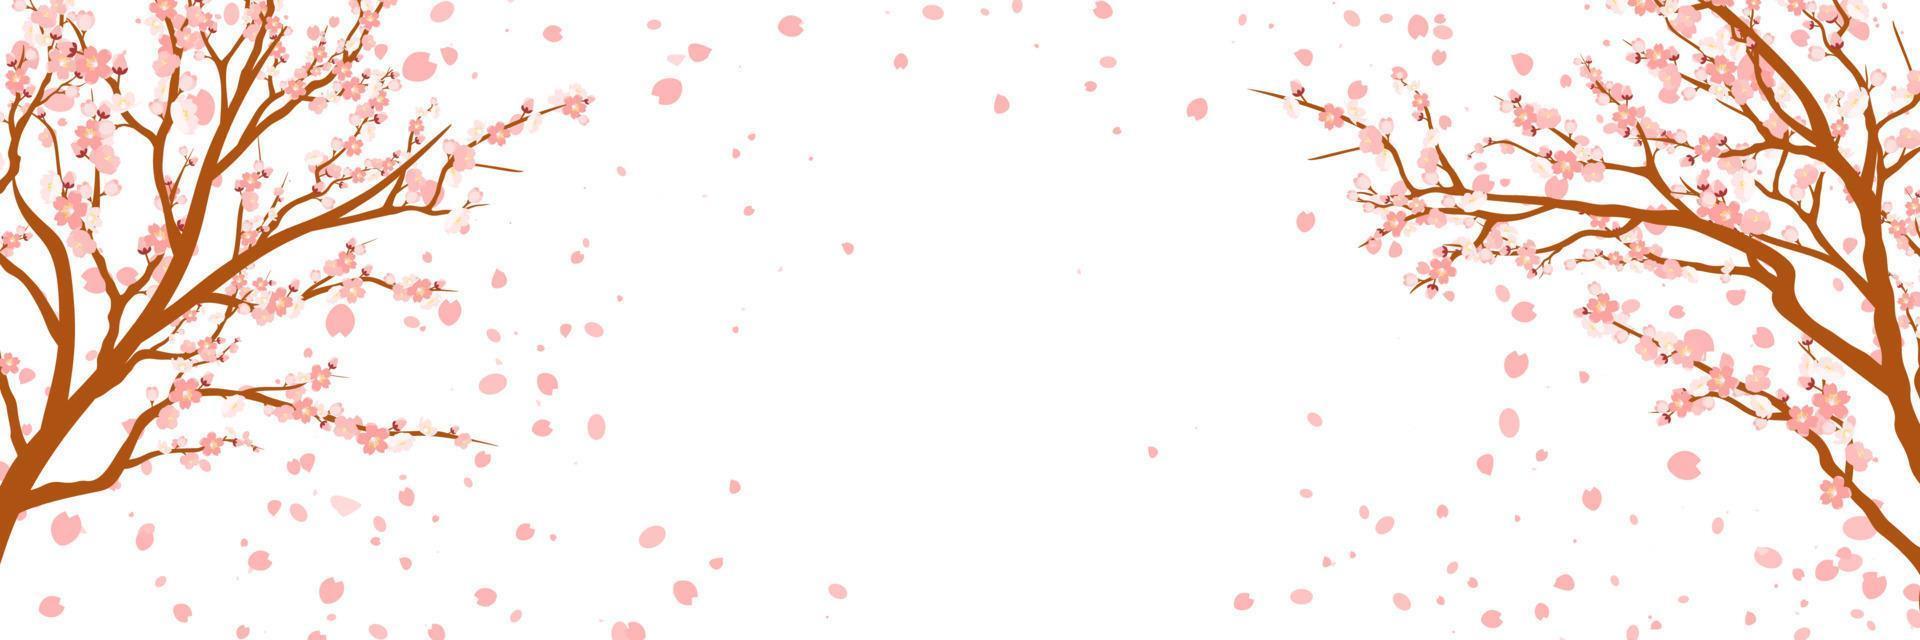 grenar med rosa blommor och körsbär knoppar. sakura. kronblad flygande i de vind. isolerat på vit bakgrund. vektor illustration.